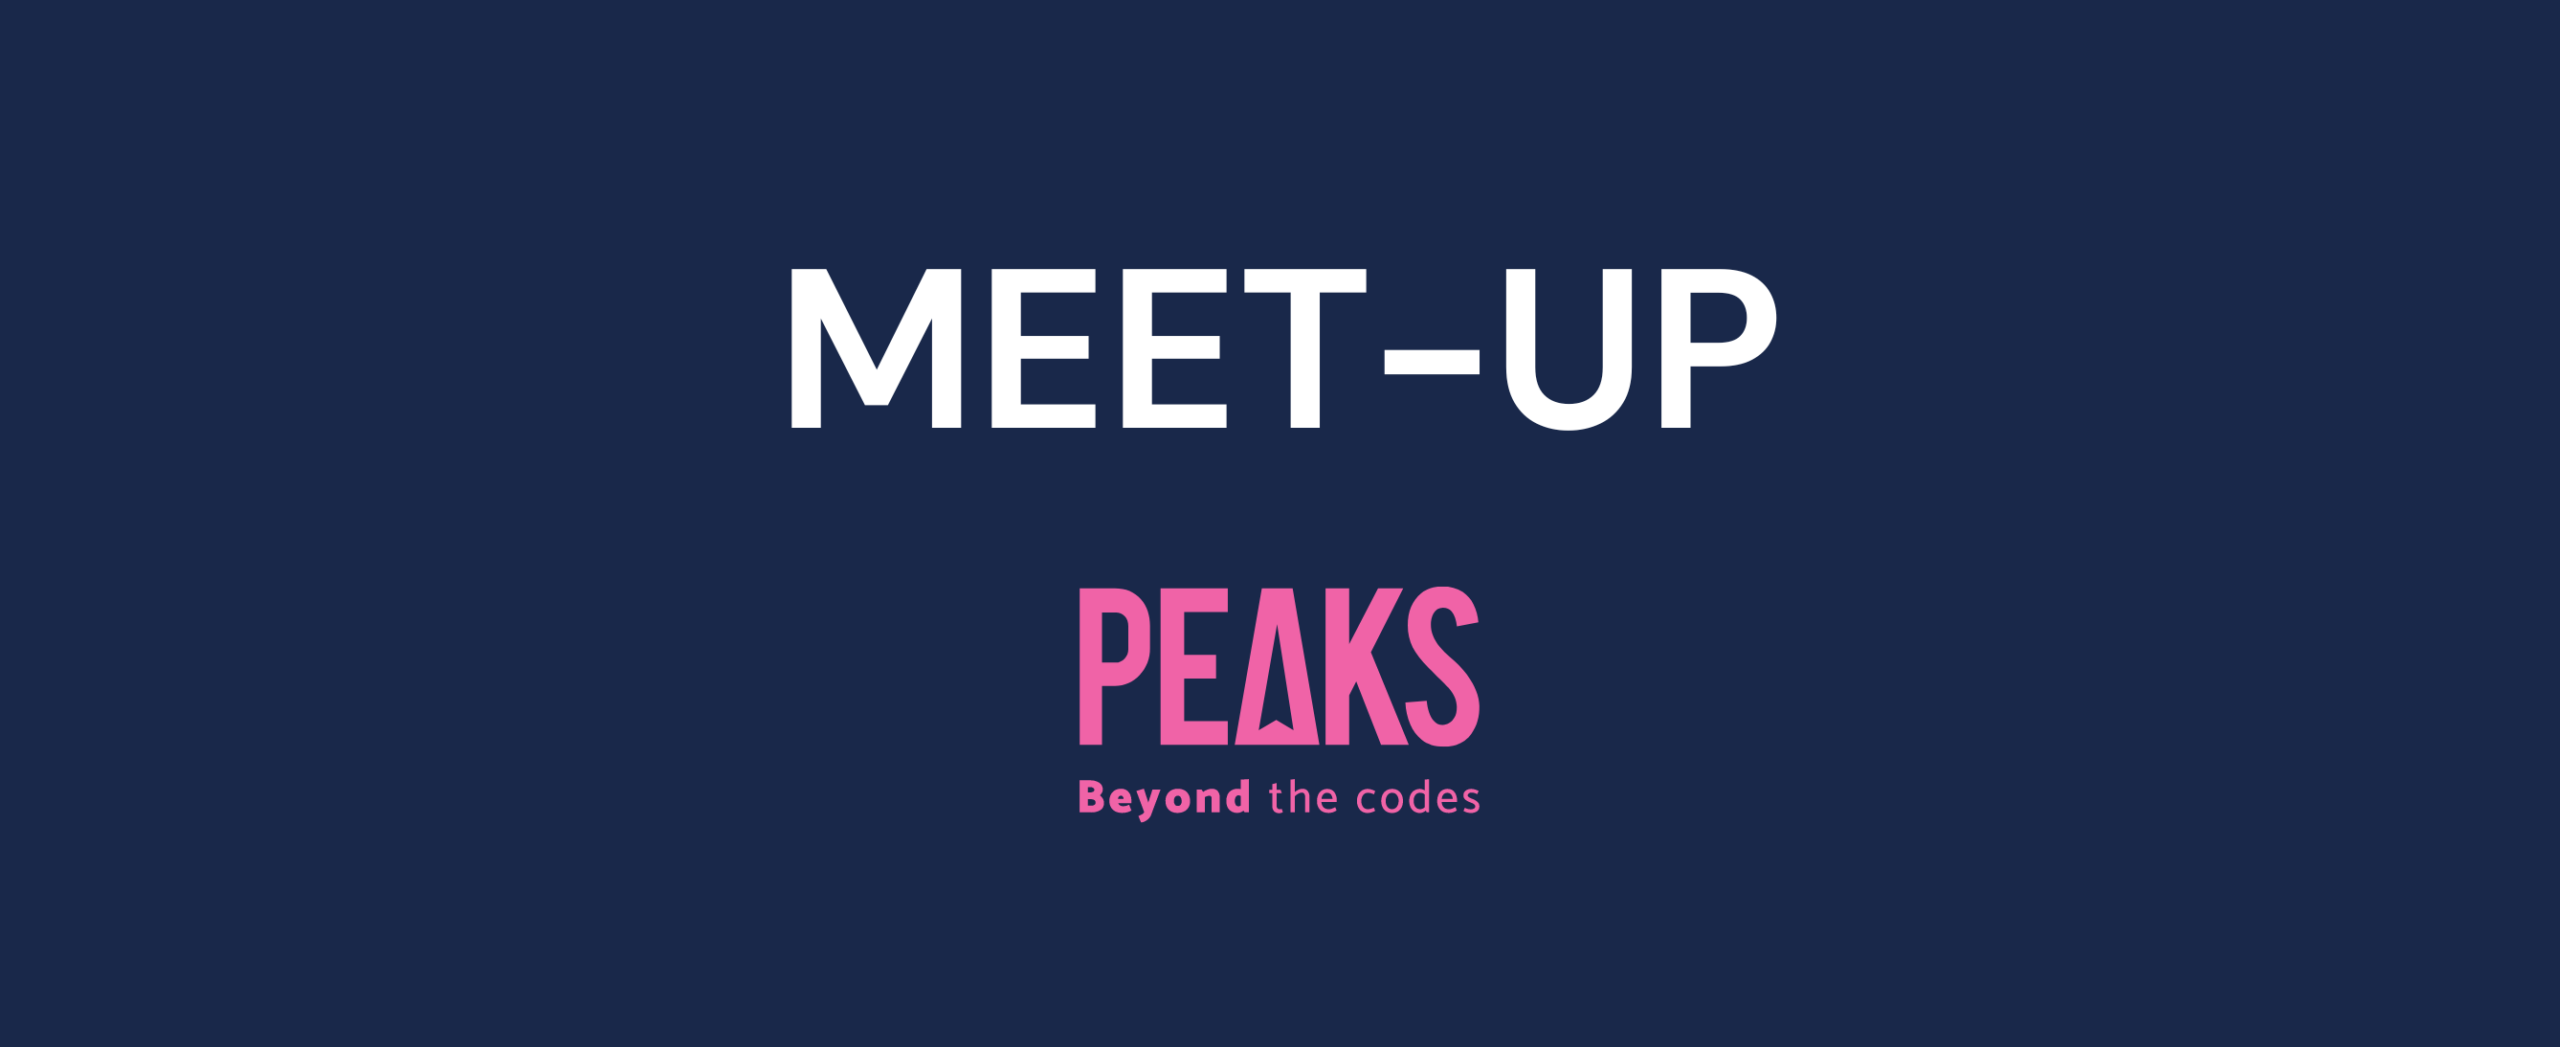 Annonce meet-up Peaks sur la performance web